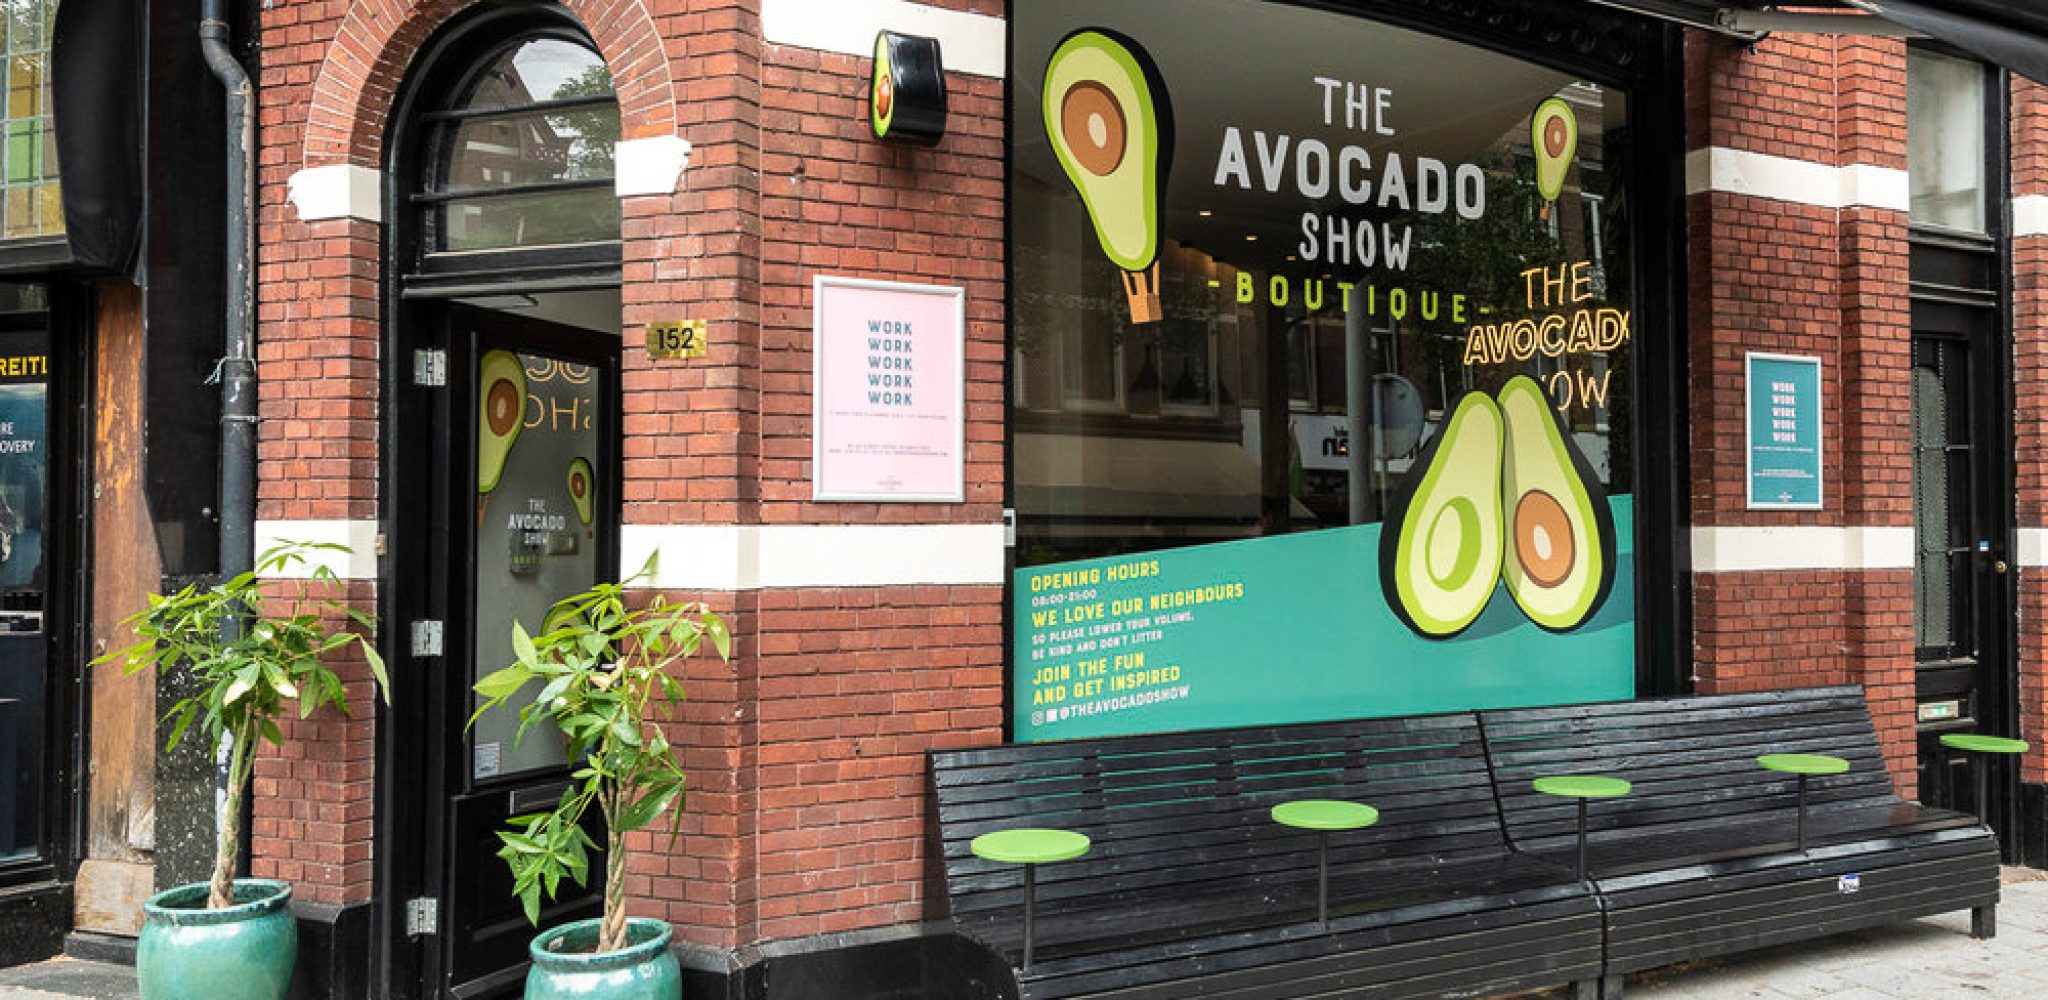 Raamsticker, logo en illustraties van avocado show, horeca pand